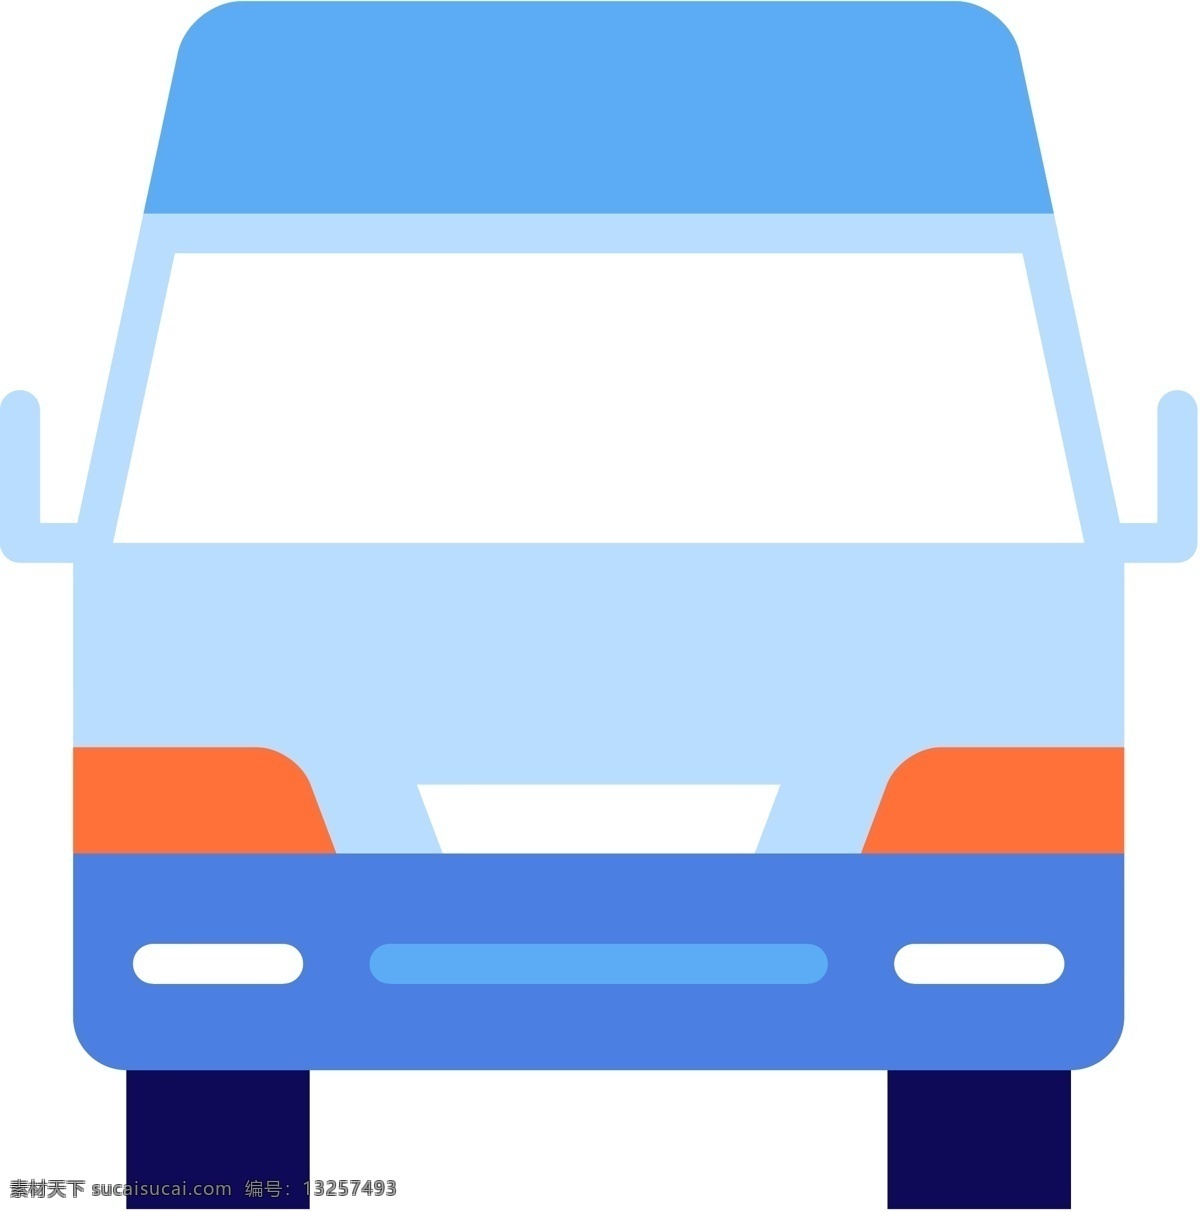 交通工具 icon 图标素材 充 线性 扁平 手绘 单色 多色 简约 精美 可爱 商务 圆润 方正 立体 图标 飞船 汽车 公交车